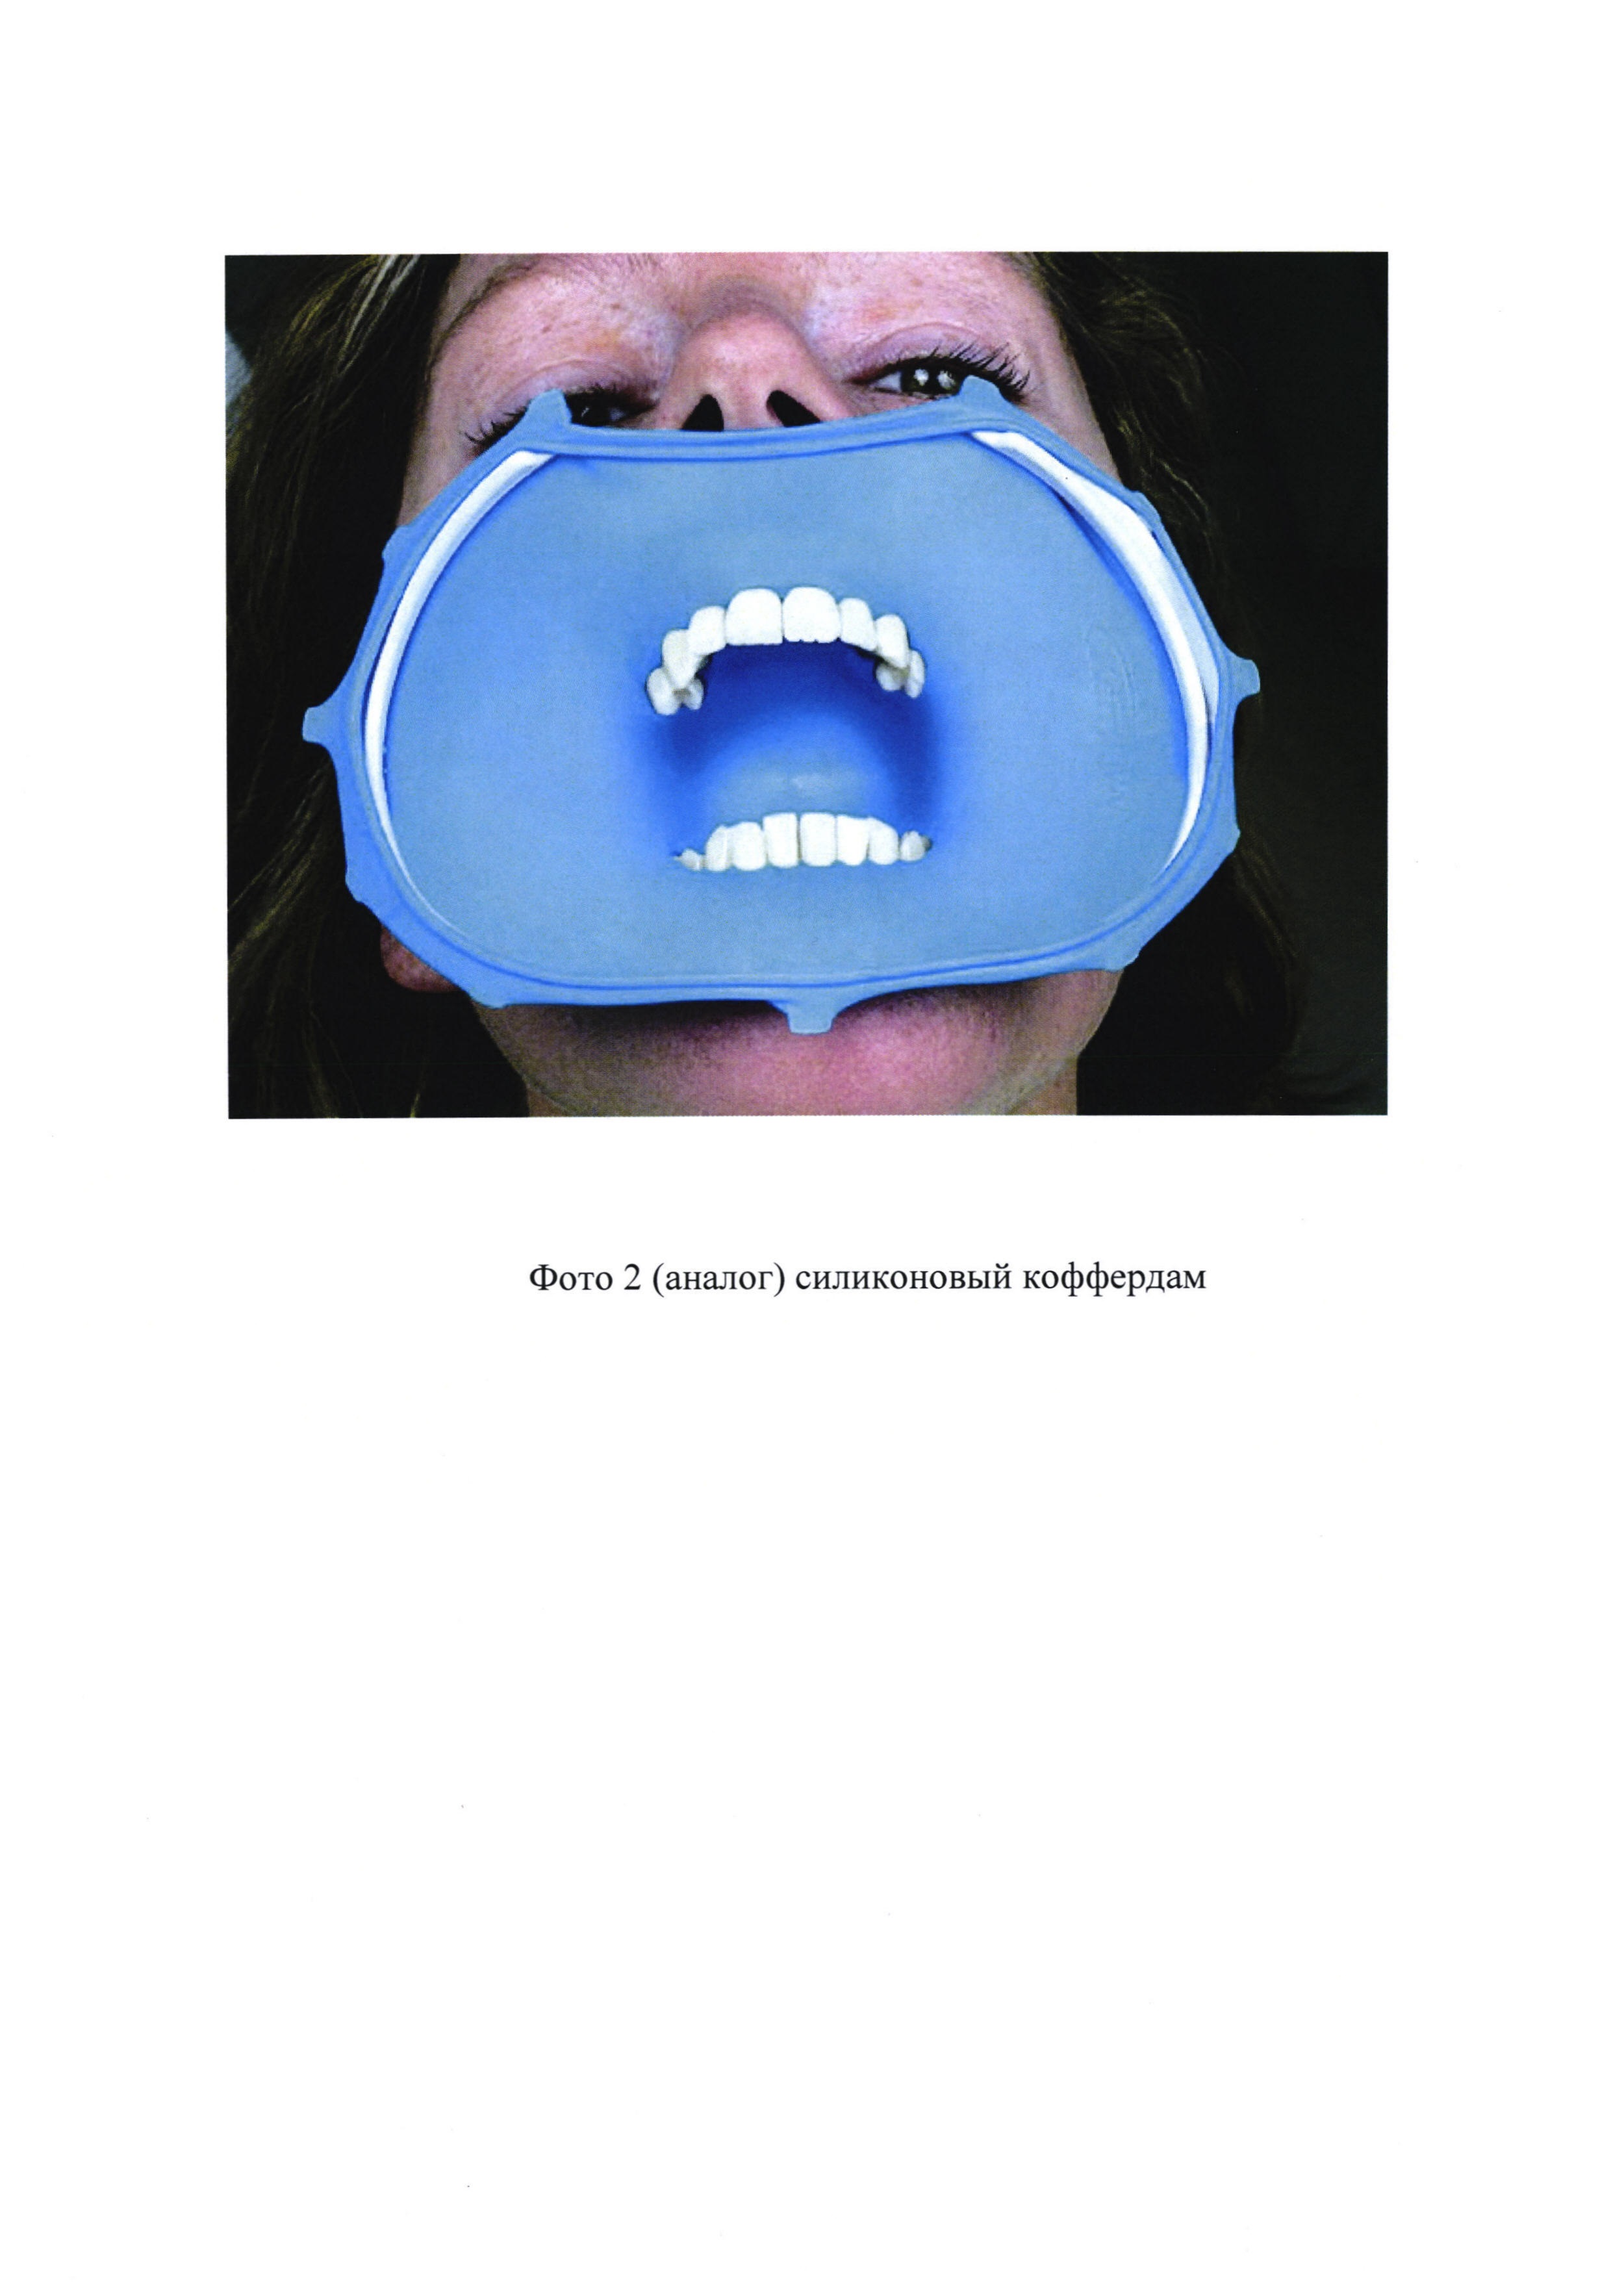 Стоппер для защиты органов полости рта от распространения коротковолнового ультрафиолетового излучения